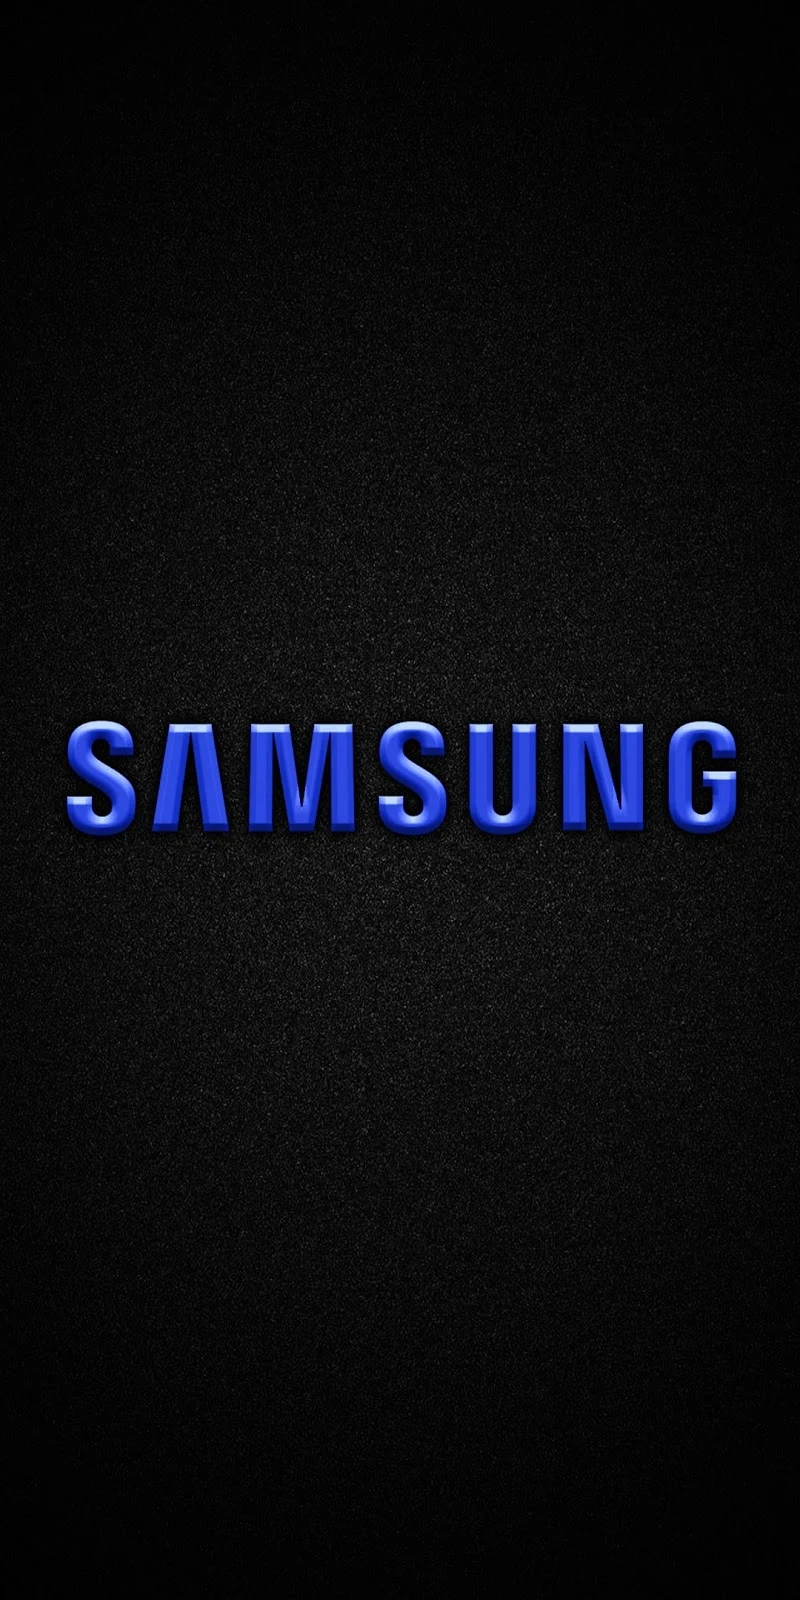 Phone logo samsung